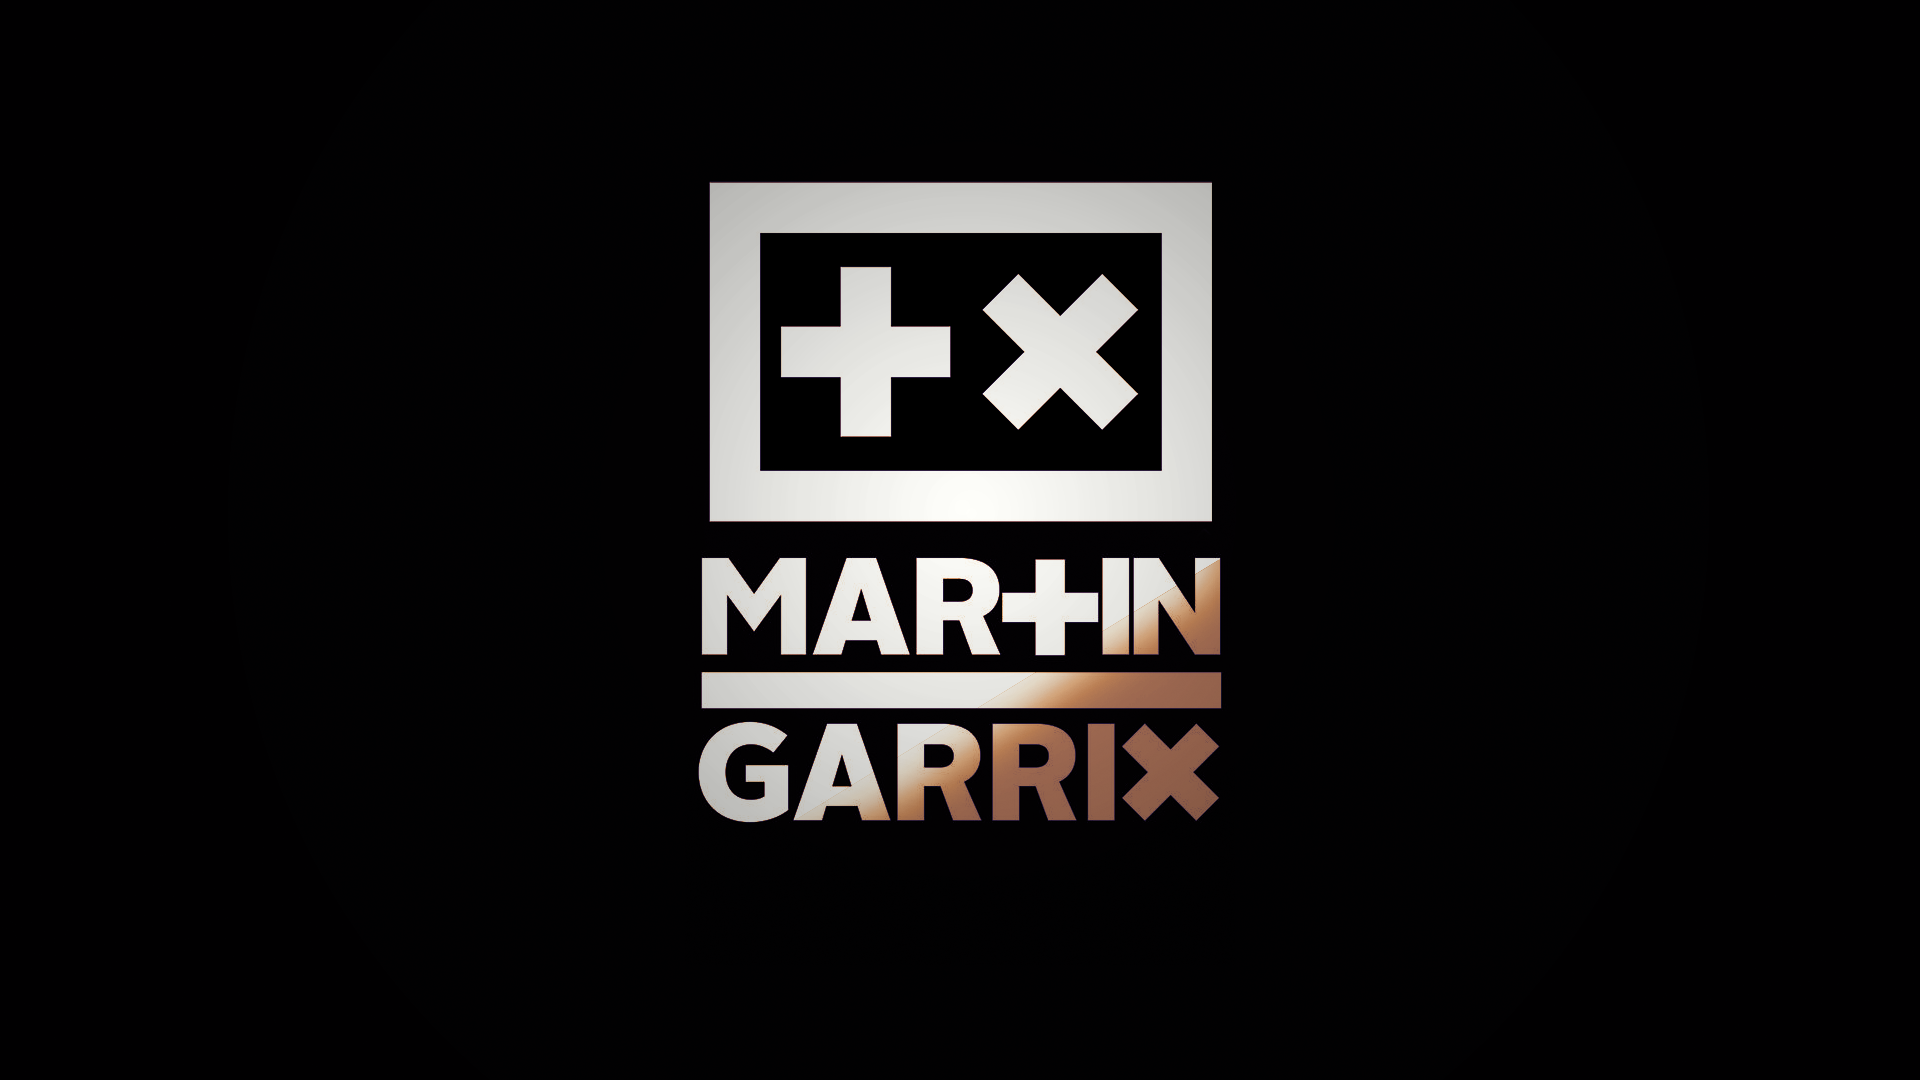 Martin Garrix Logo Wallpaper